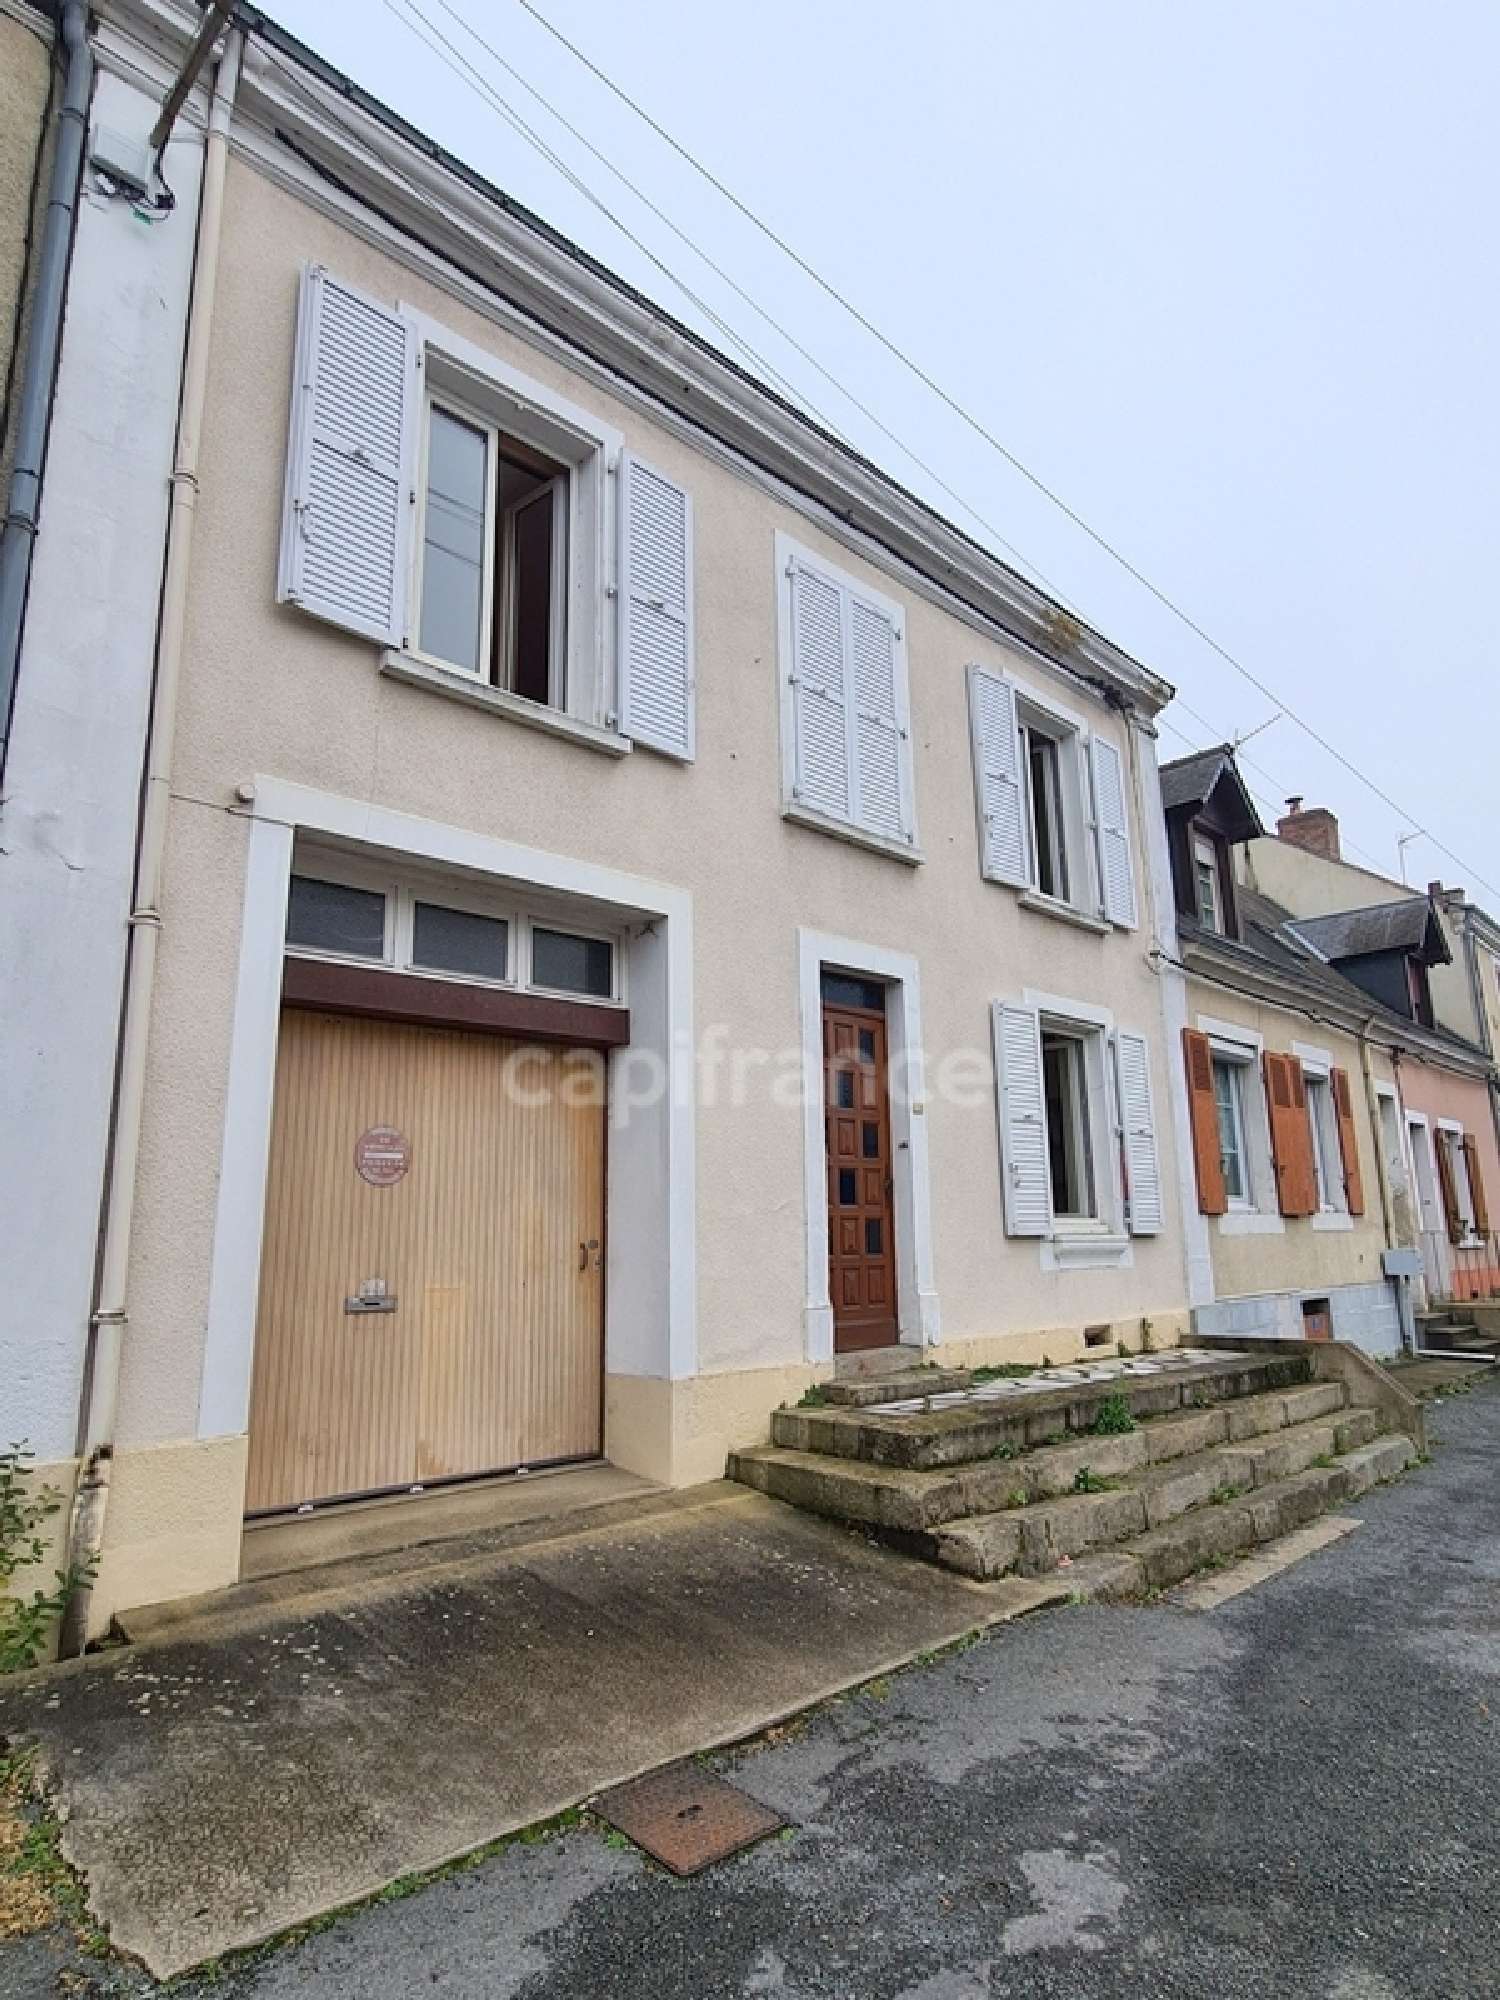  à vendre maison de ville Cérans-Foulletourte Sarthe 4